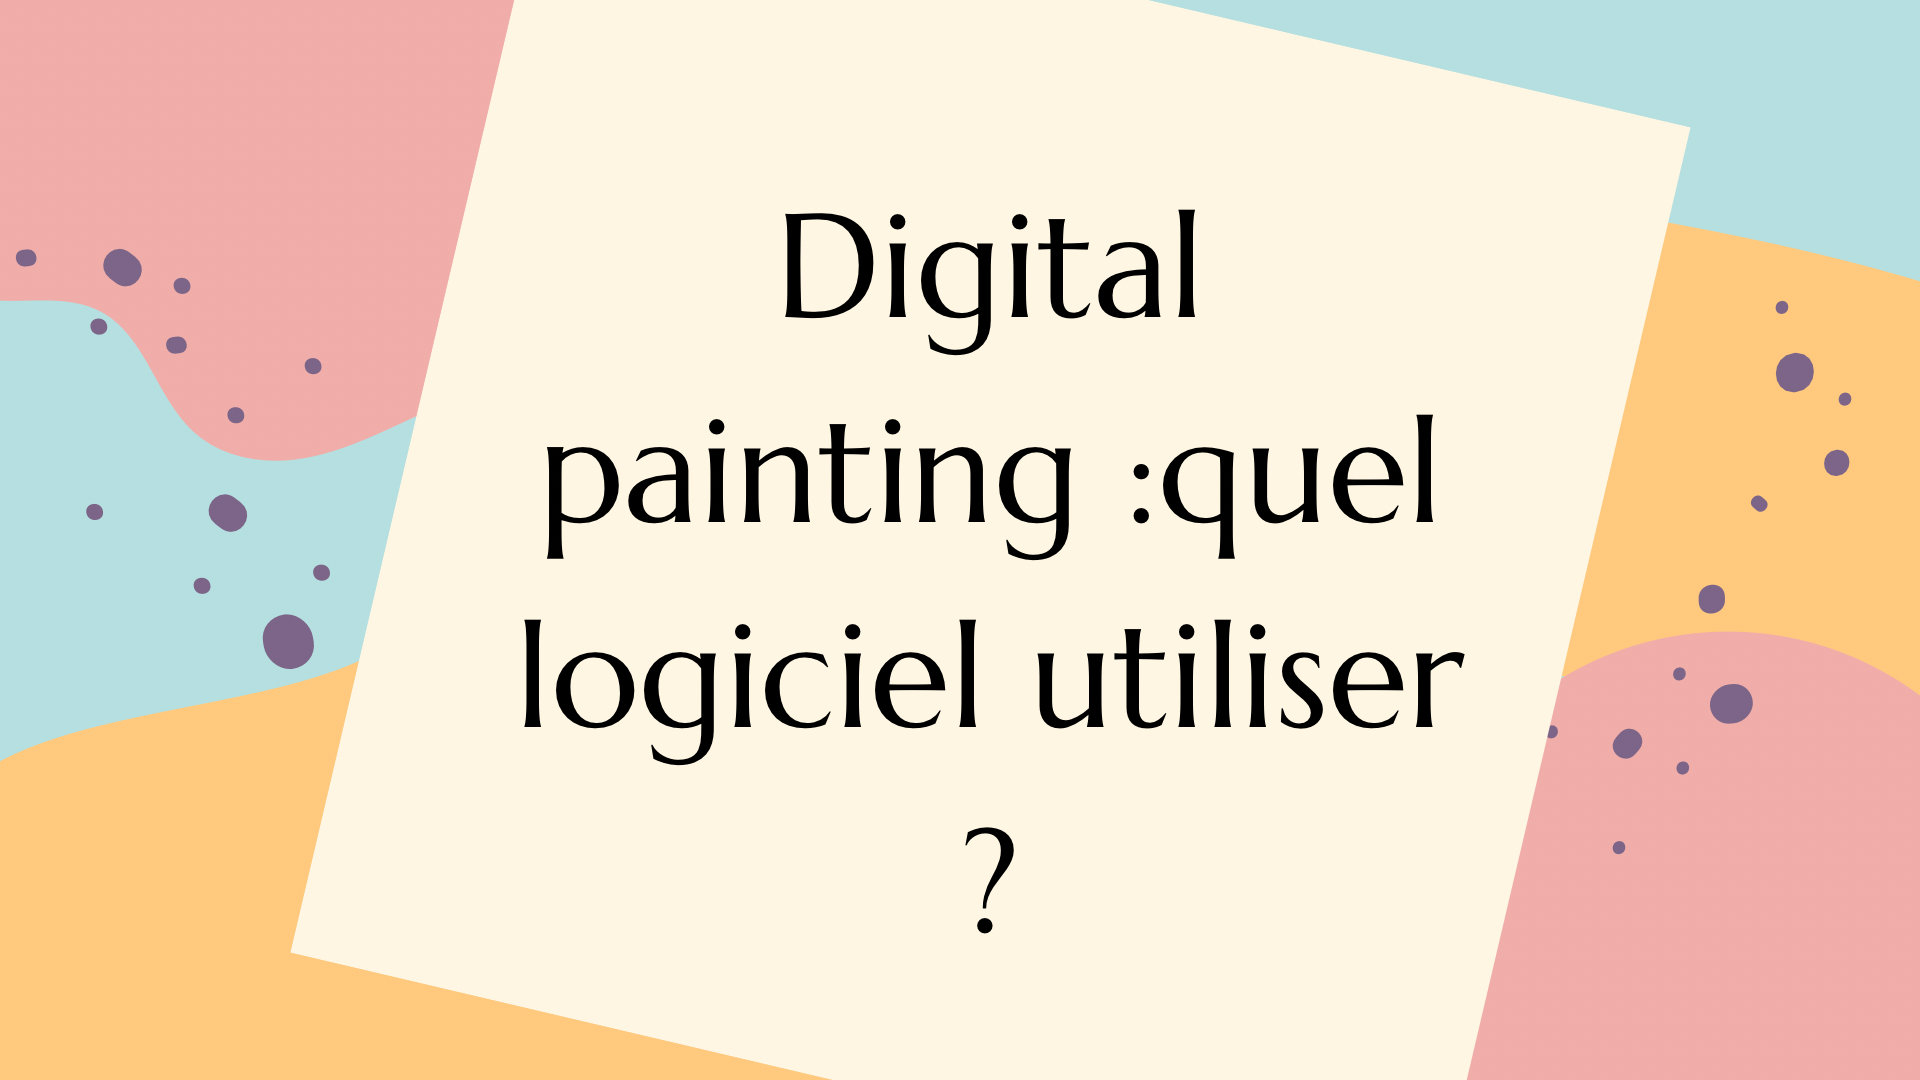 Article: Digital painting: quel logiciel de dessin utiliser quand on débute ? écrit par Cynthia Artstudio